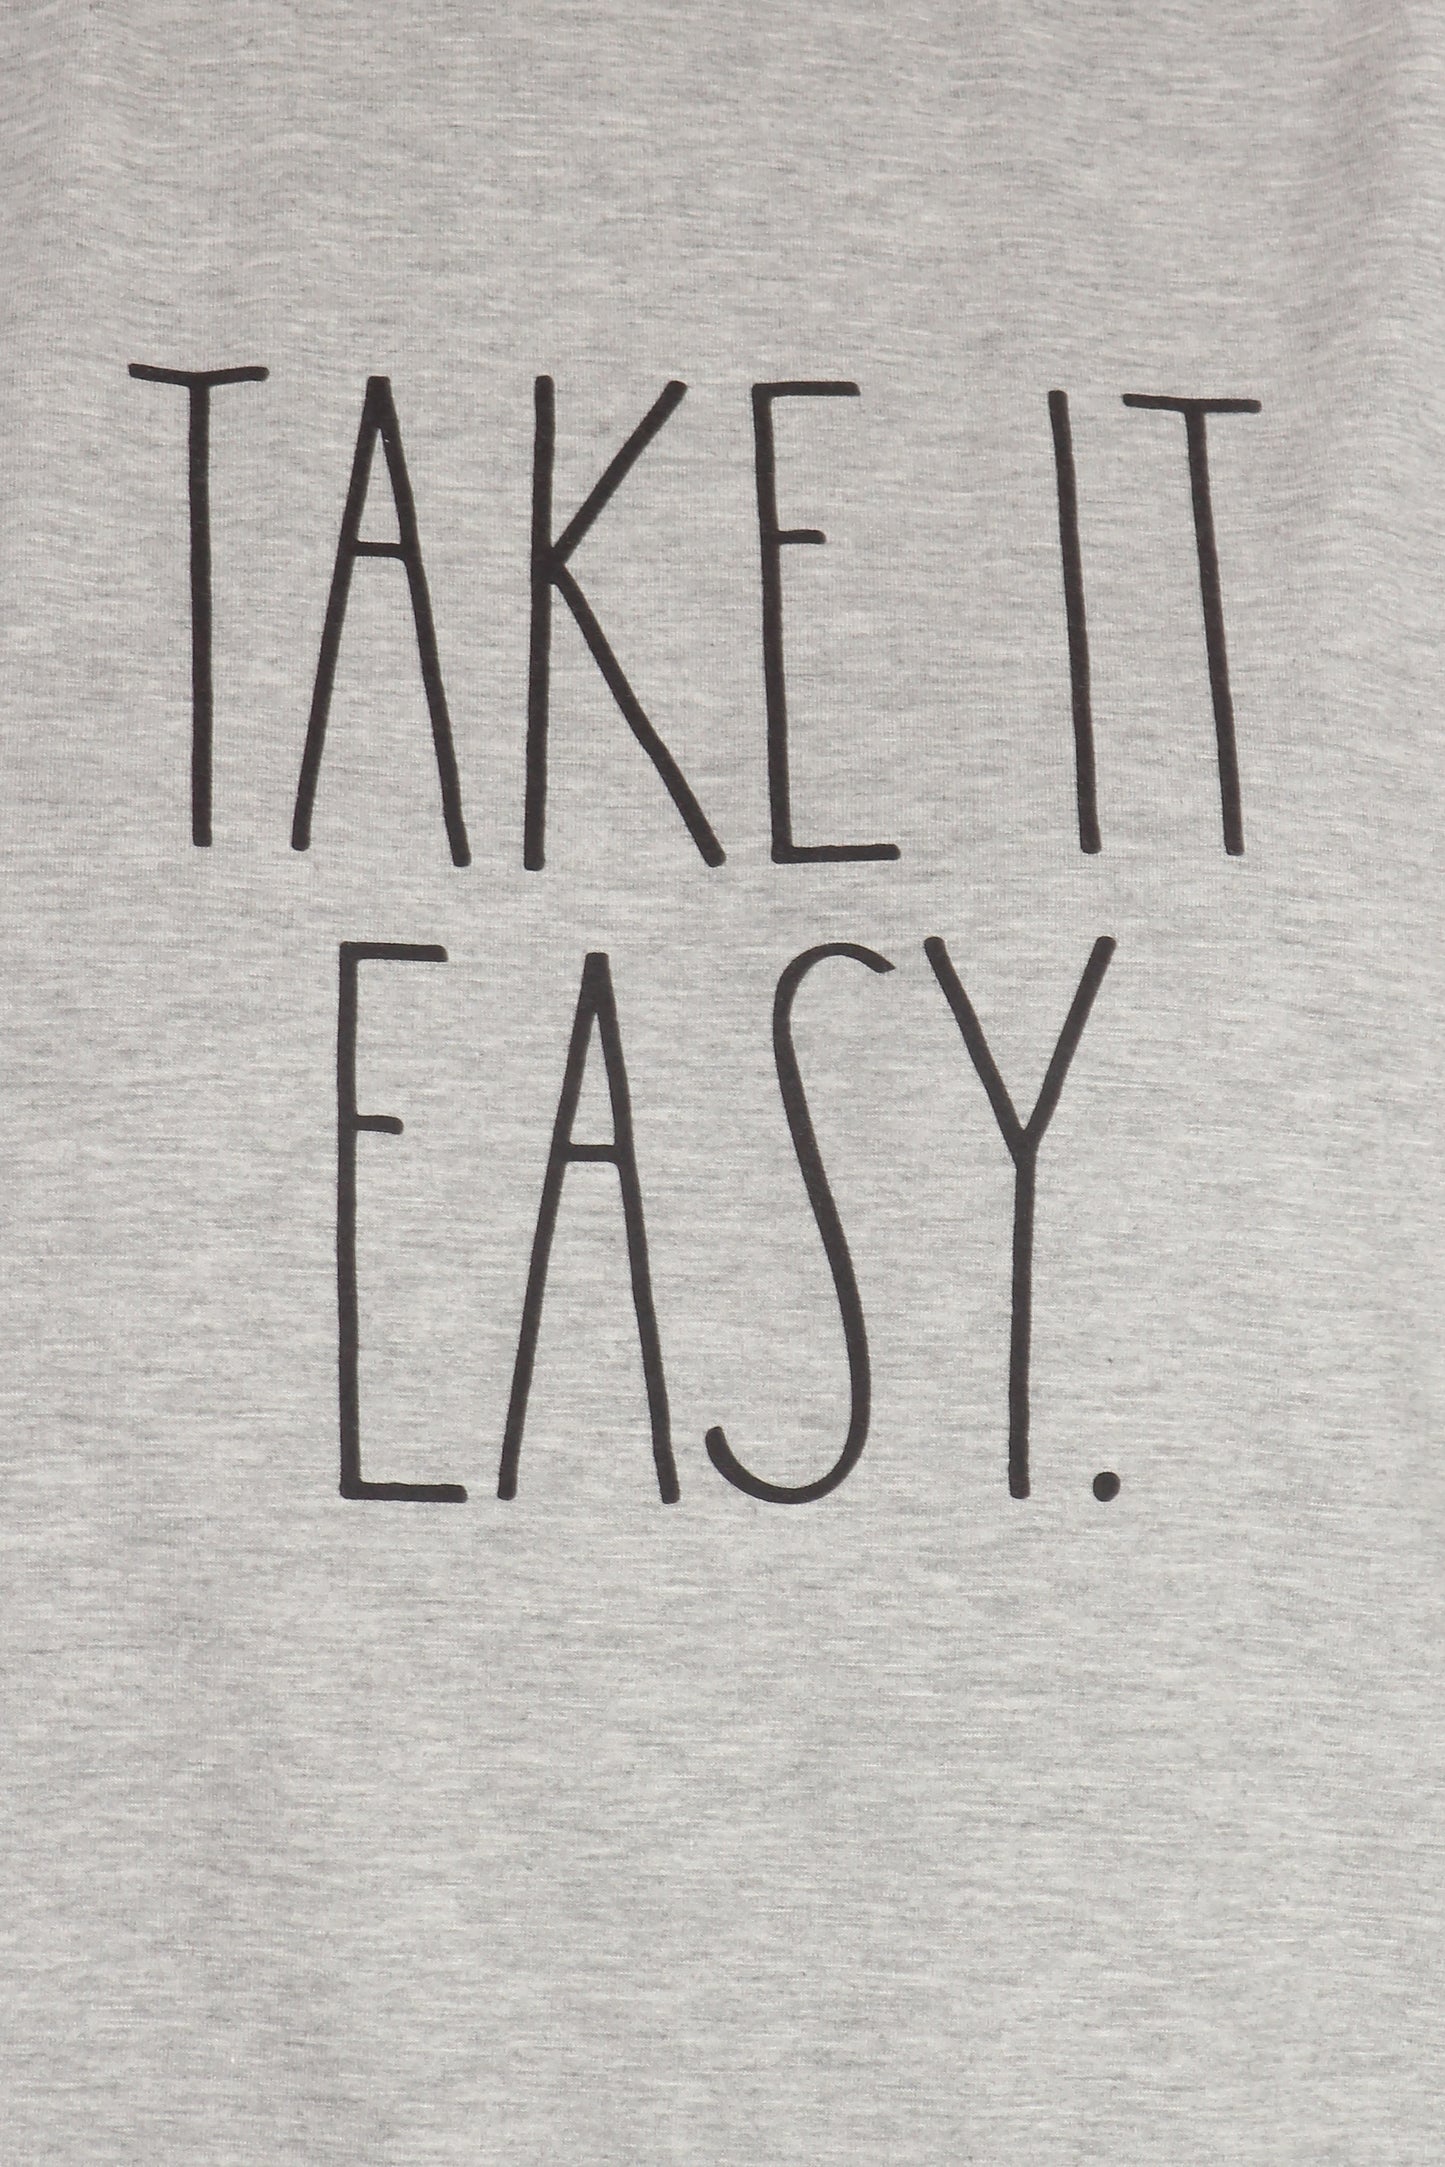 Women's "TAKE IT EASY" Plus Size Studio Raglan Sweatshirt - Rae Dunn Wear